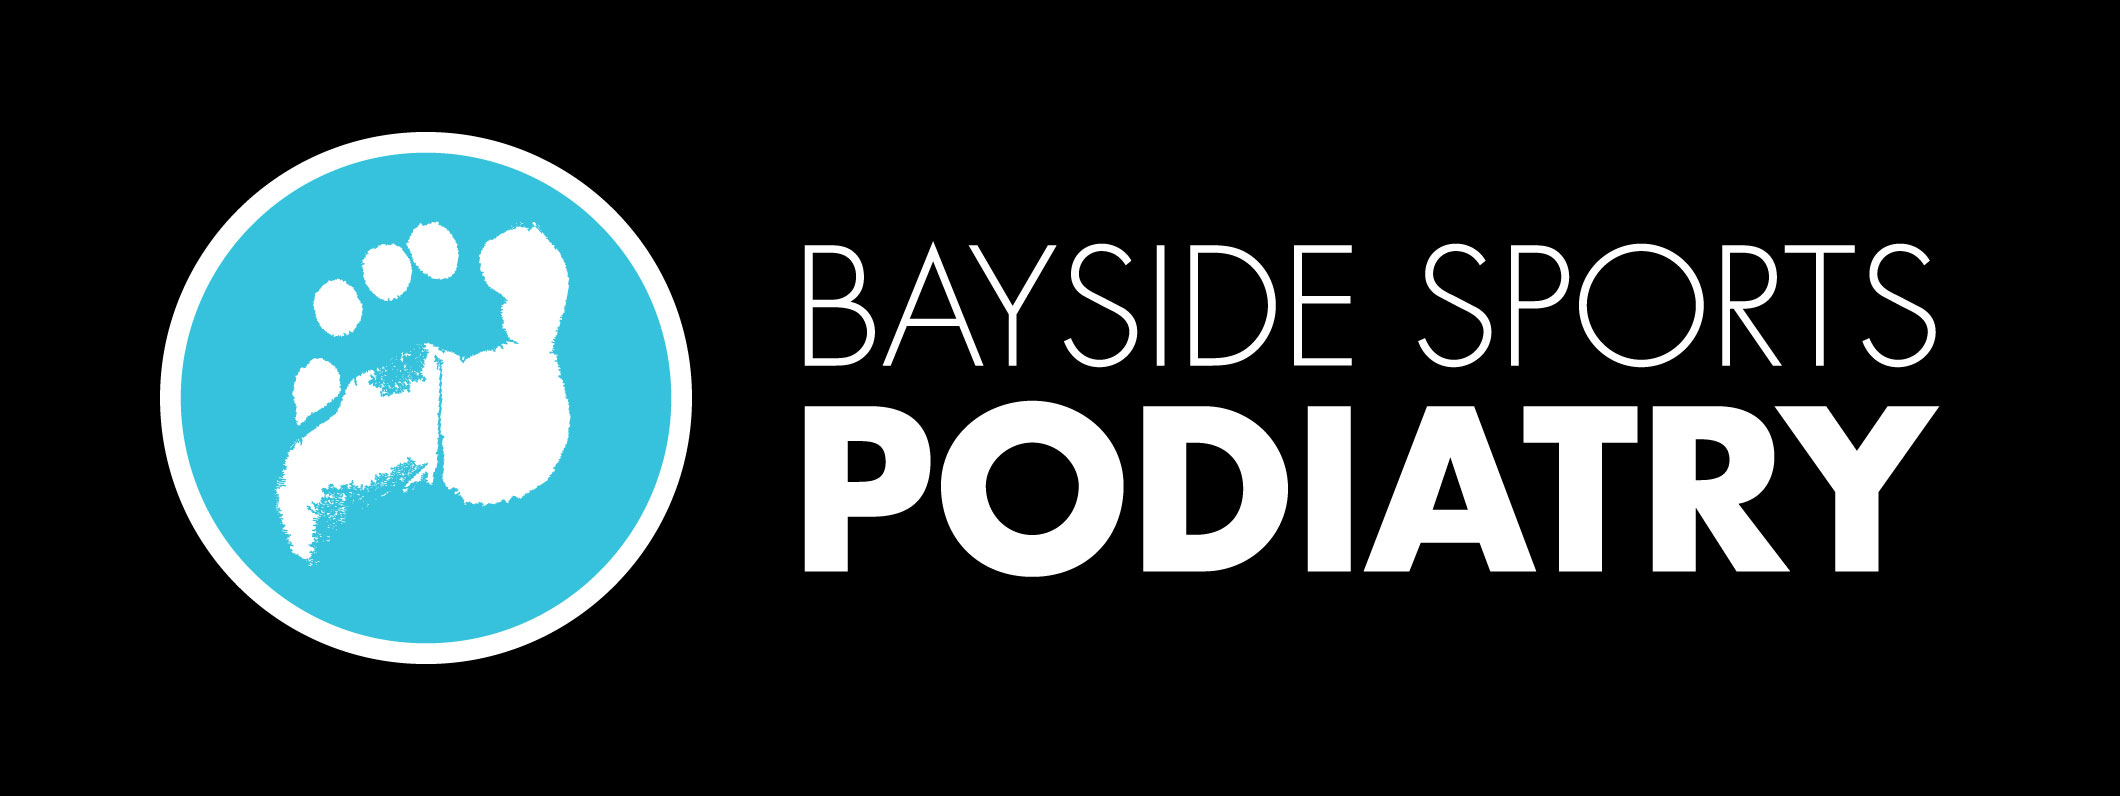 Bayside_Sports_Pod_logo_black_web_large[1]